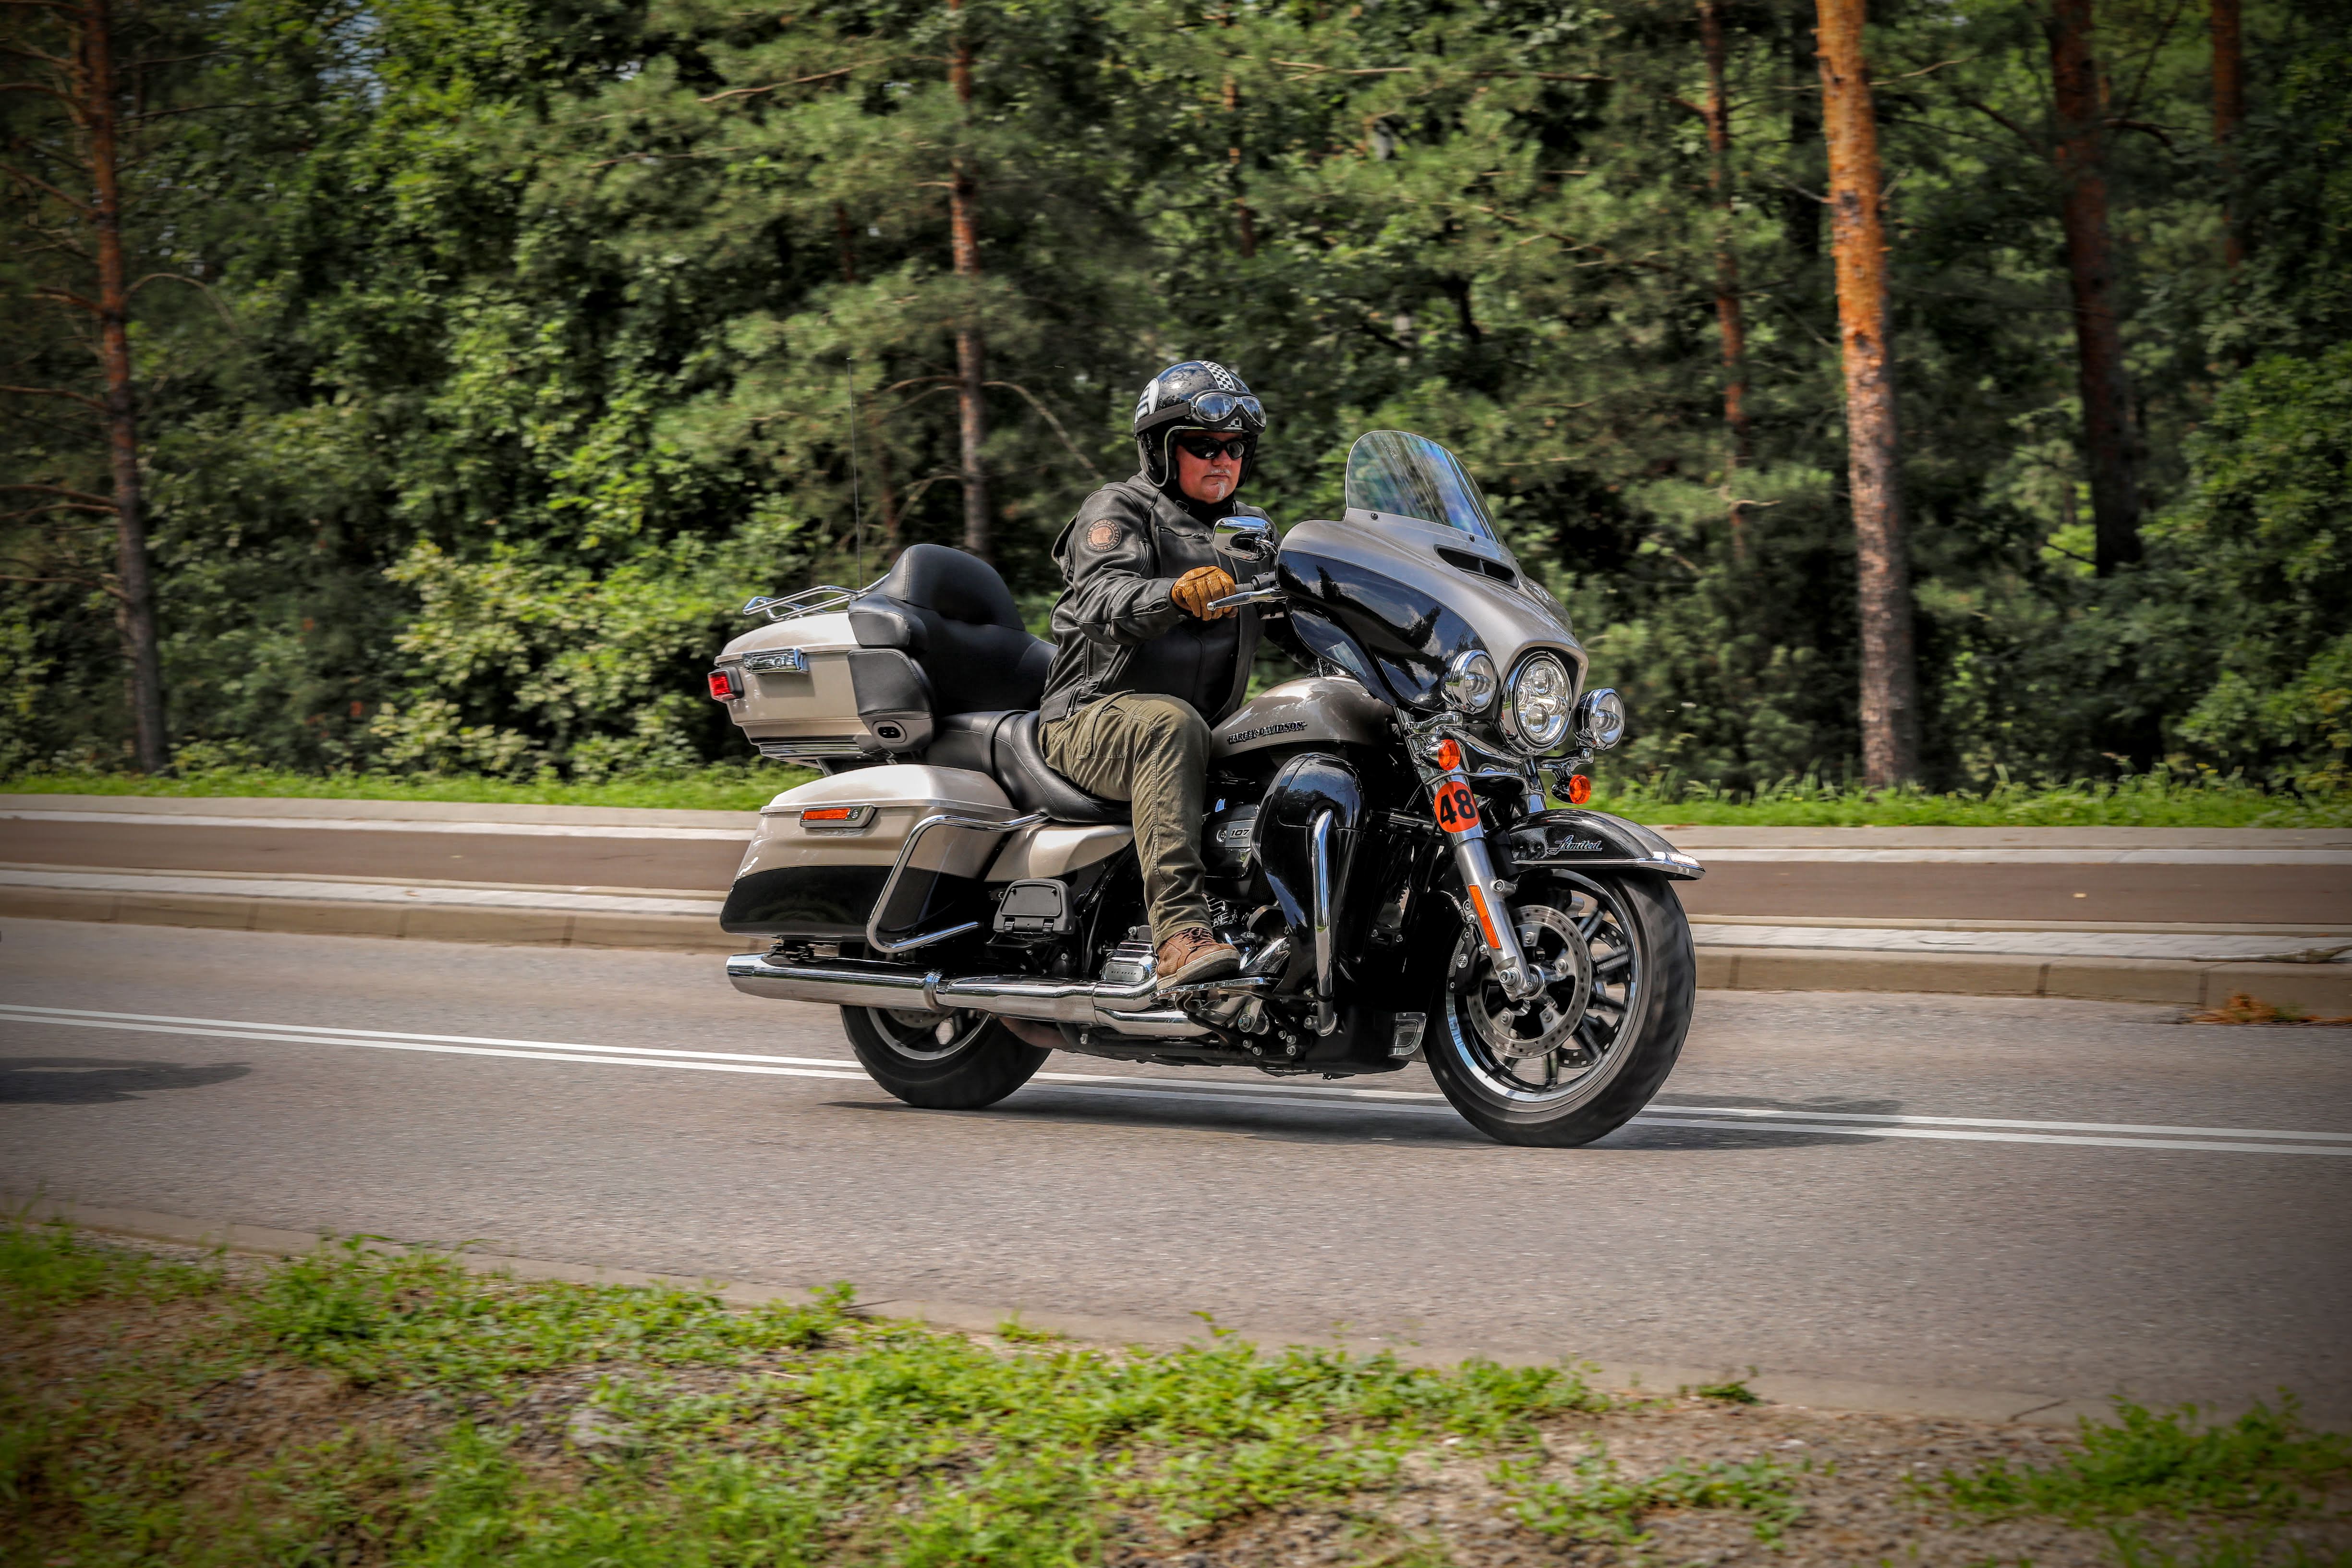 20.07.2018 Warszawa , Motocykle Harley Davidson - Utra Limited oraz Indian Roadmaster testuja Lech Potynski i Michal Mazurek . Fot. Slawomir Kaminski / Agencja Gazeta